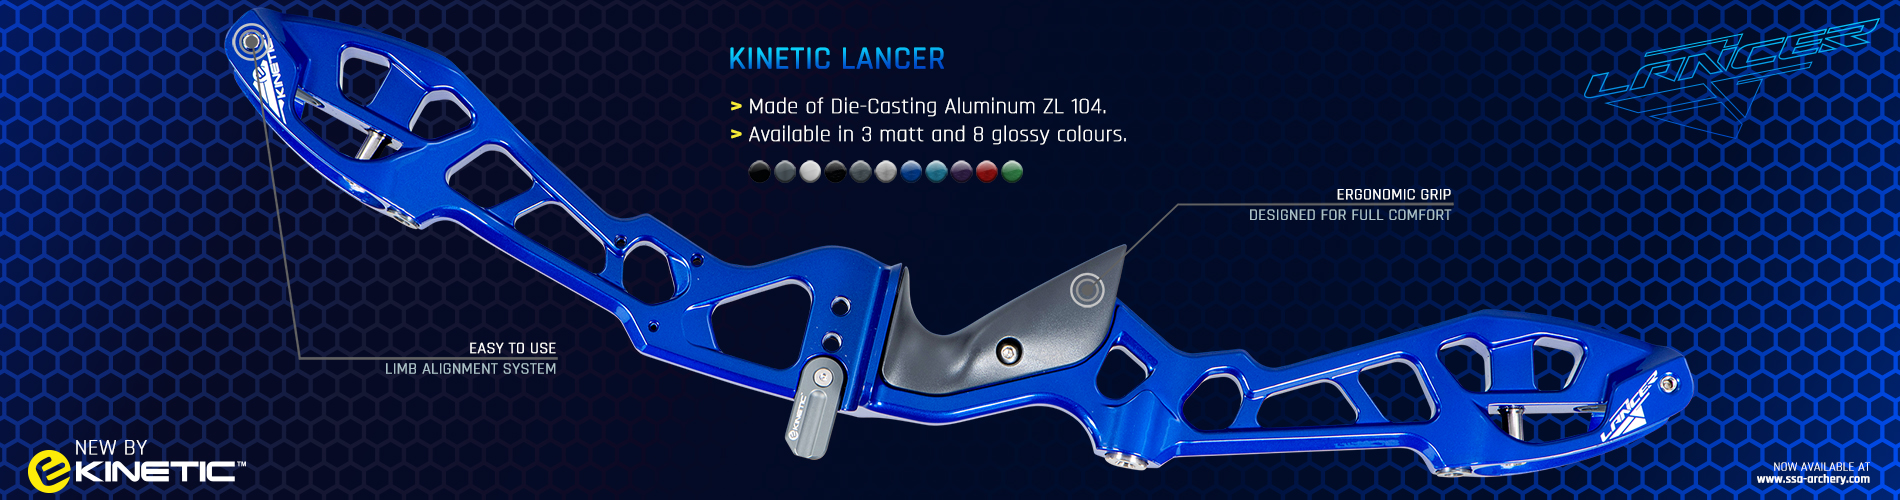 Kinetic Lancer